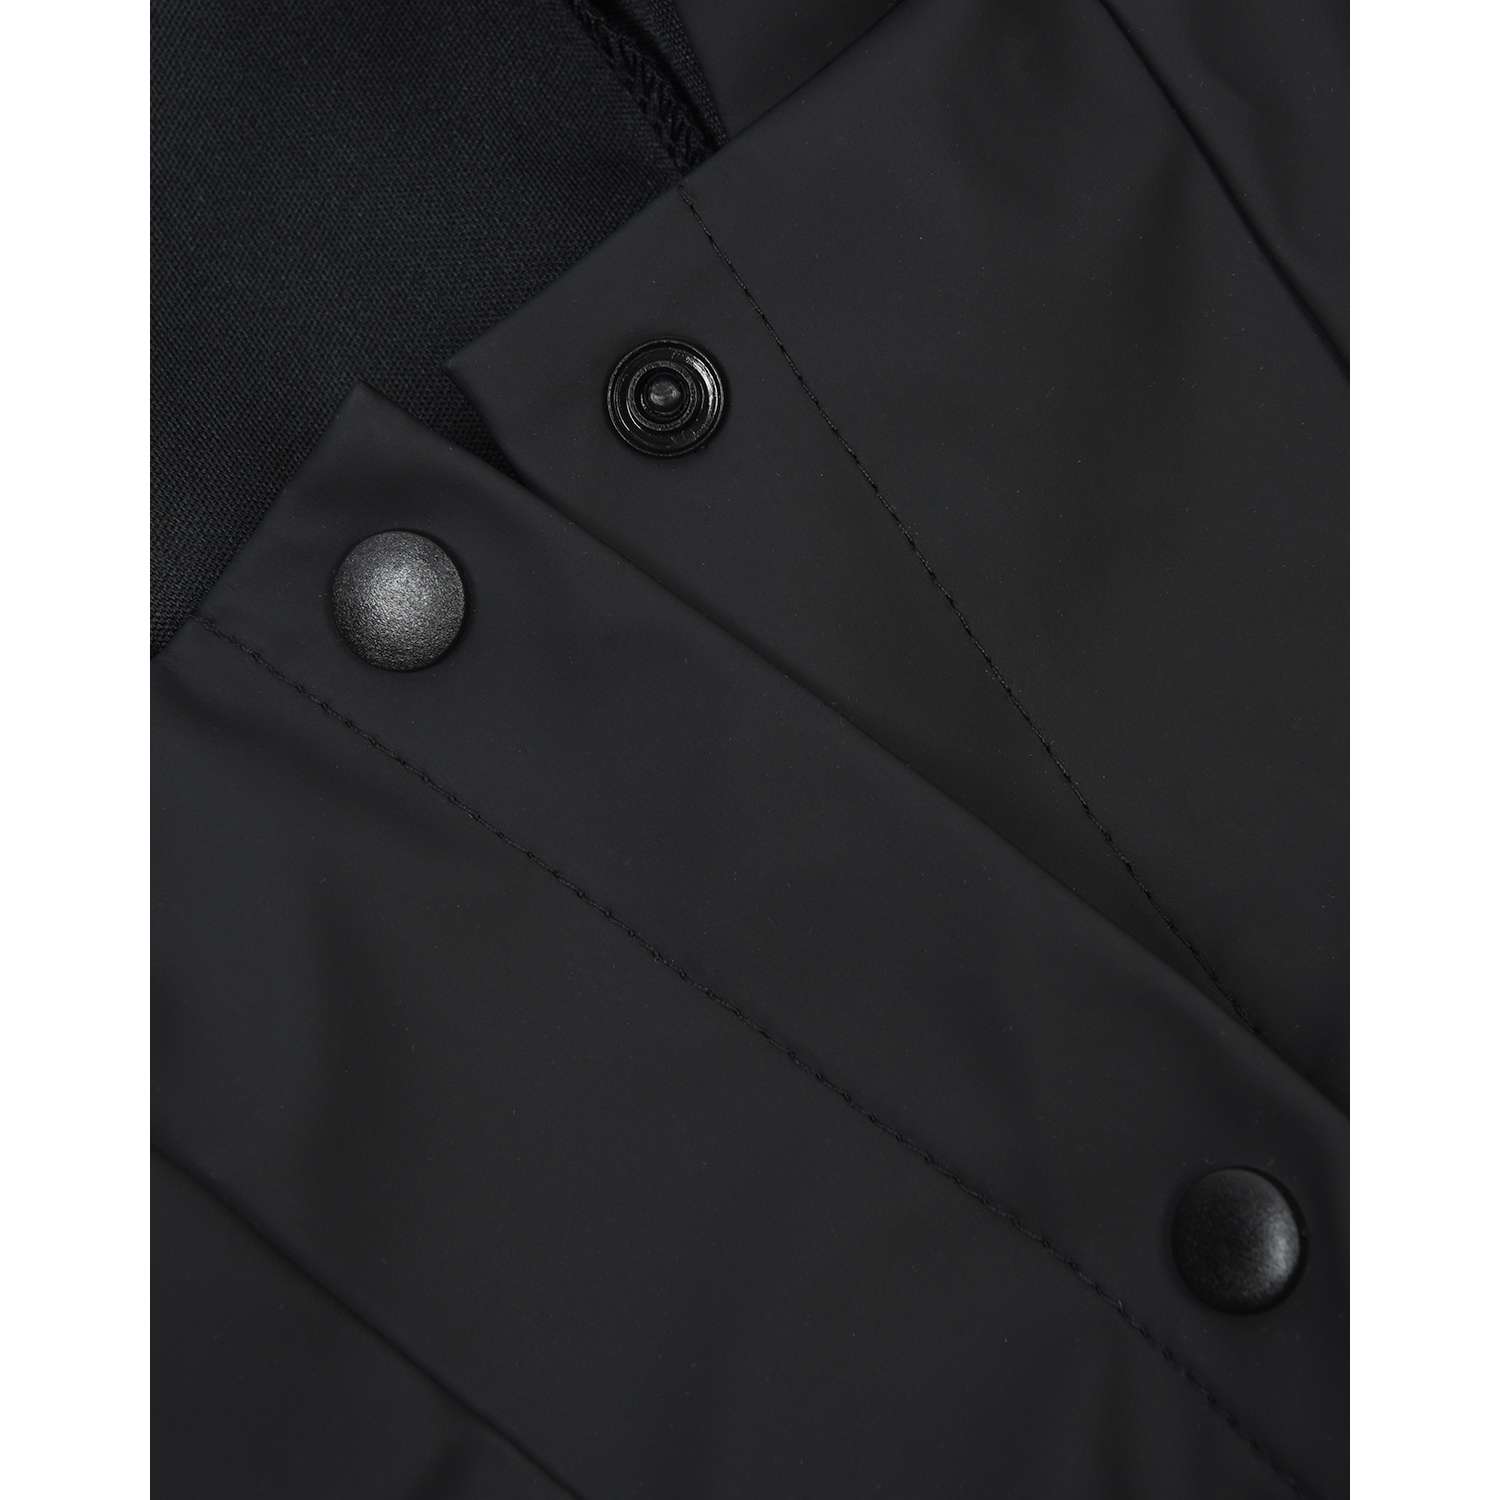 Дождевик-куртка для собак Zoozavr чёрный 65 - фото 3